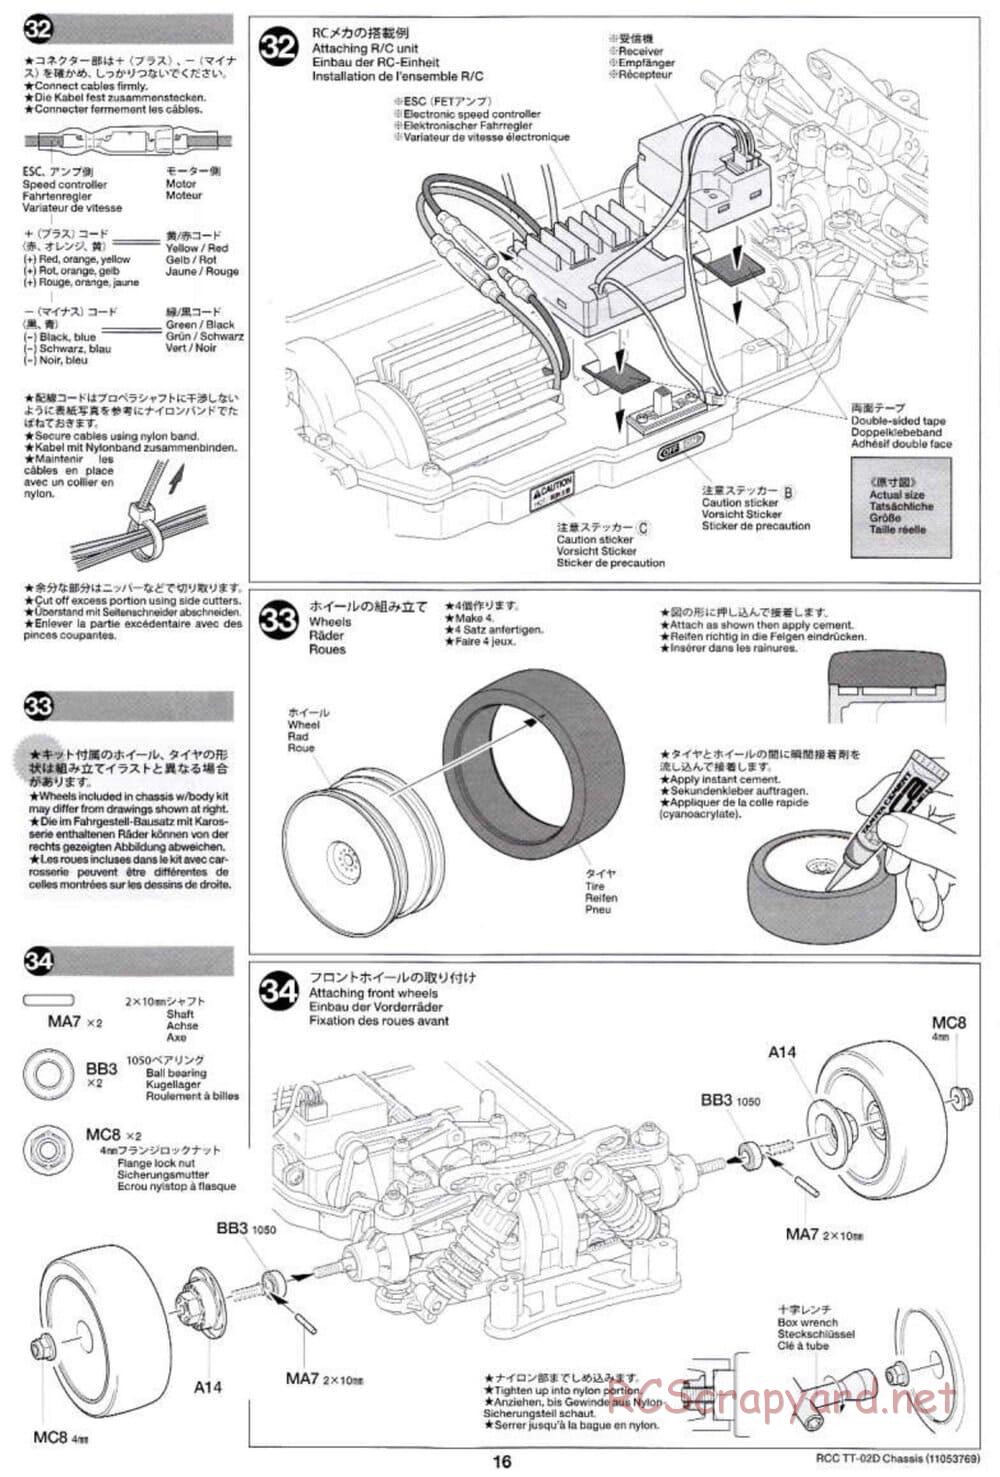 Tamiya - TT-02D Chassis - Manual - Page 16